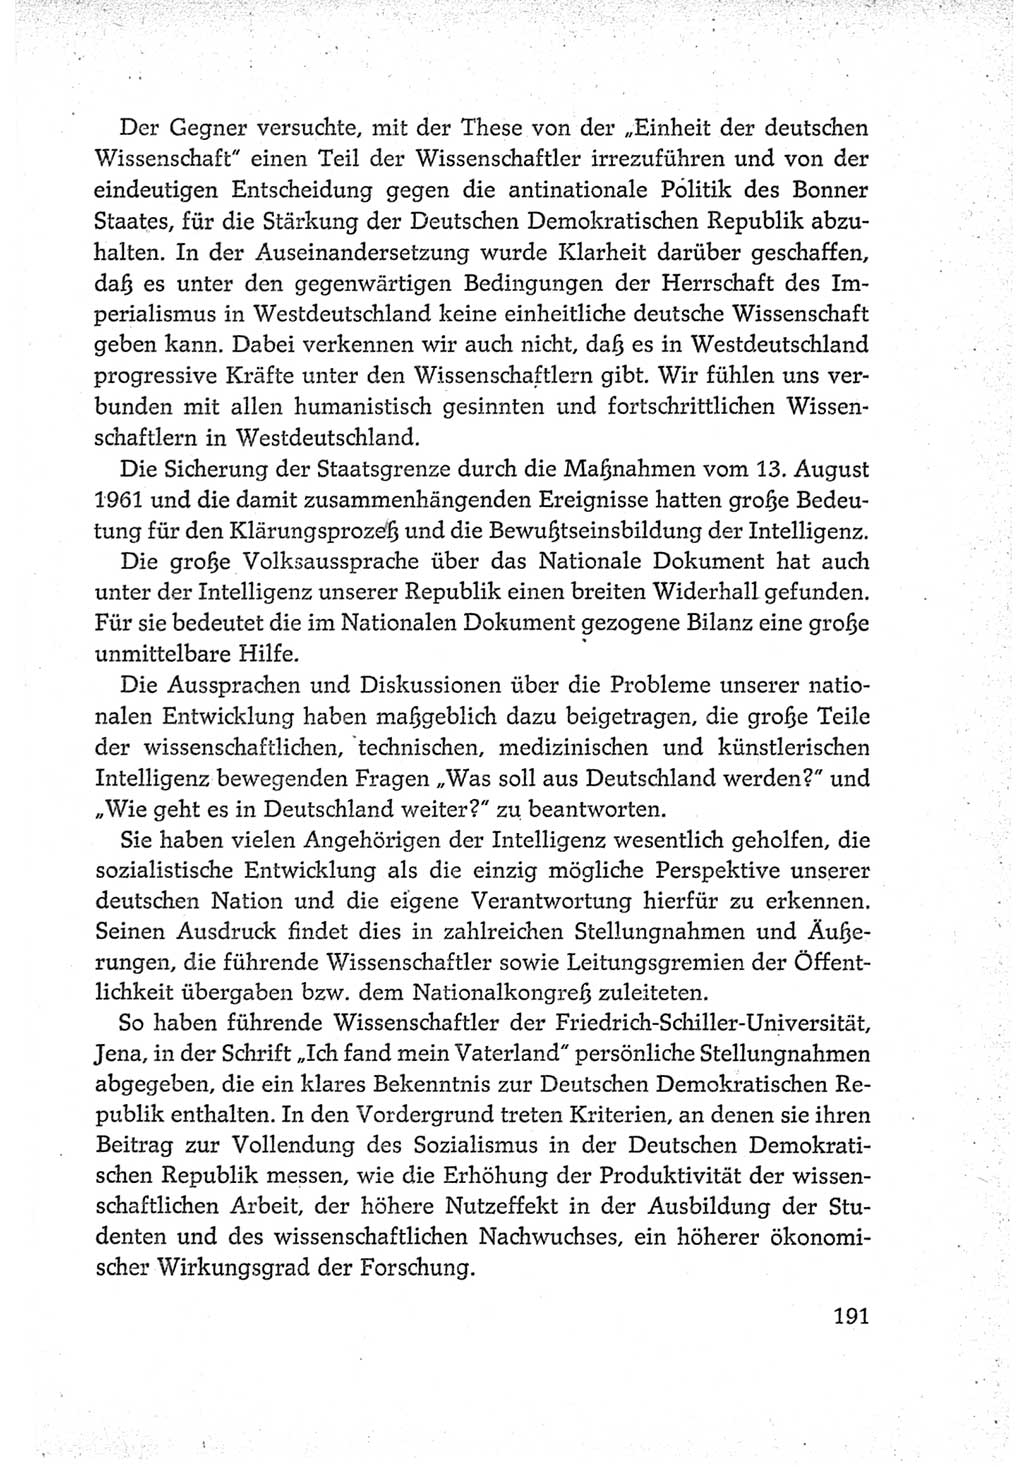 Protokoll der Verhandlungen des Ⅵ. Parteitages der Sozialistischen Einheitspartei Deutschlands (SED) [Deutsche Demokratische Republik (DDR)] 1963, Band Ⅳ, Seite 191 (Prot. Verh. Ⅵ. PT SED DDR 1963, Bd. Ⅳ, S. 191)